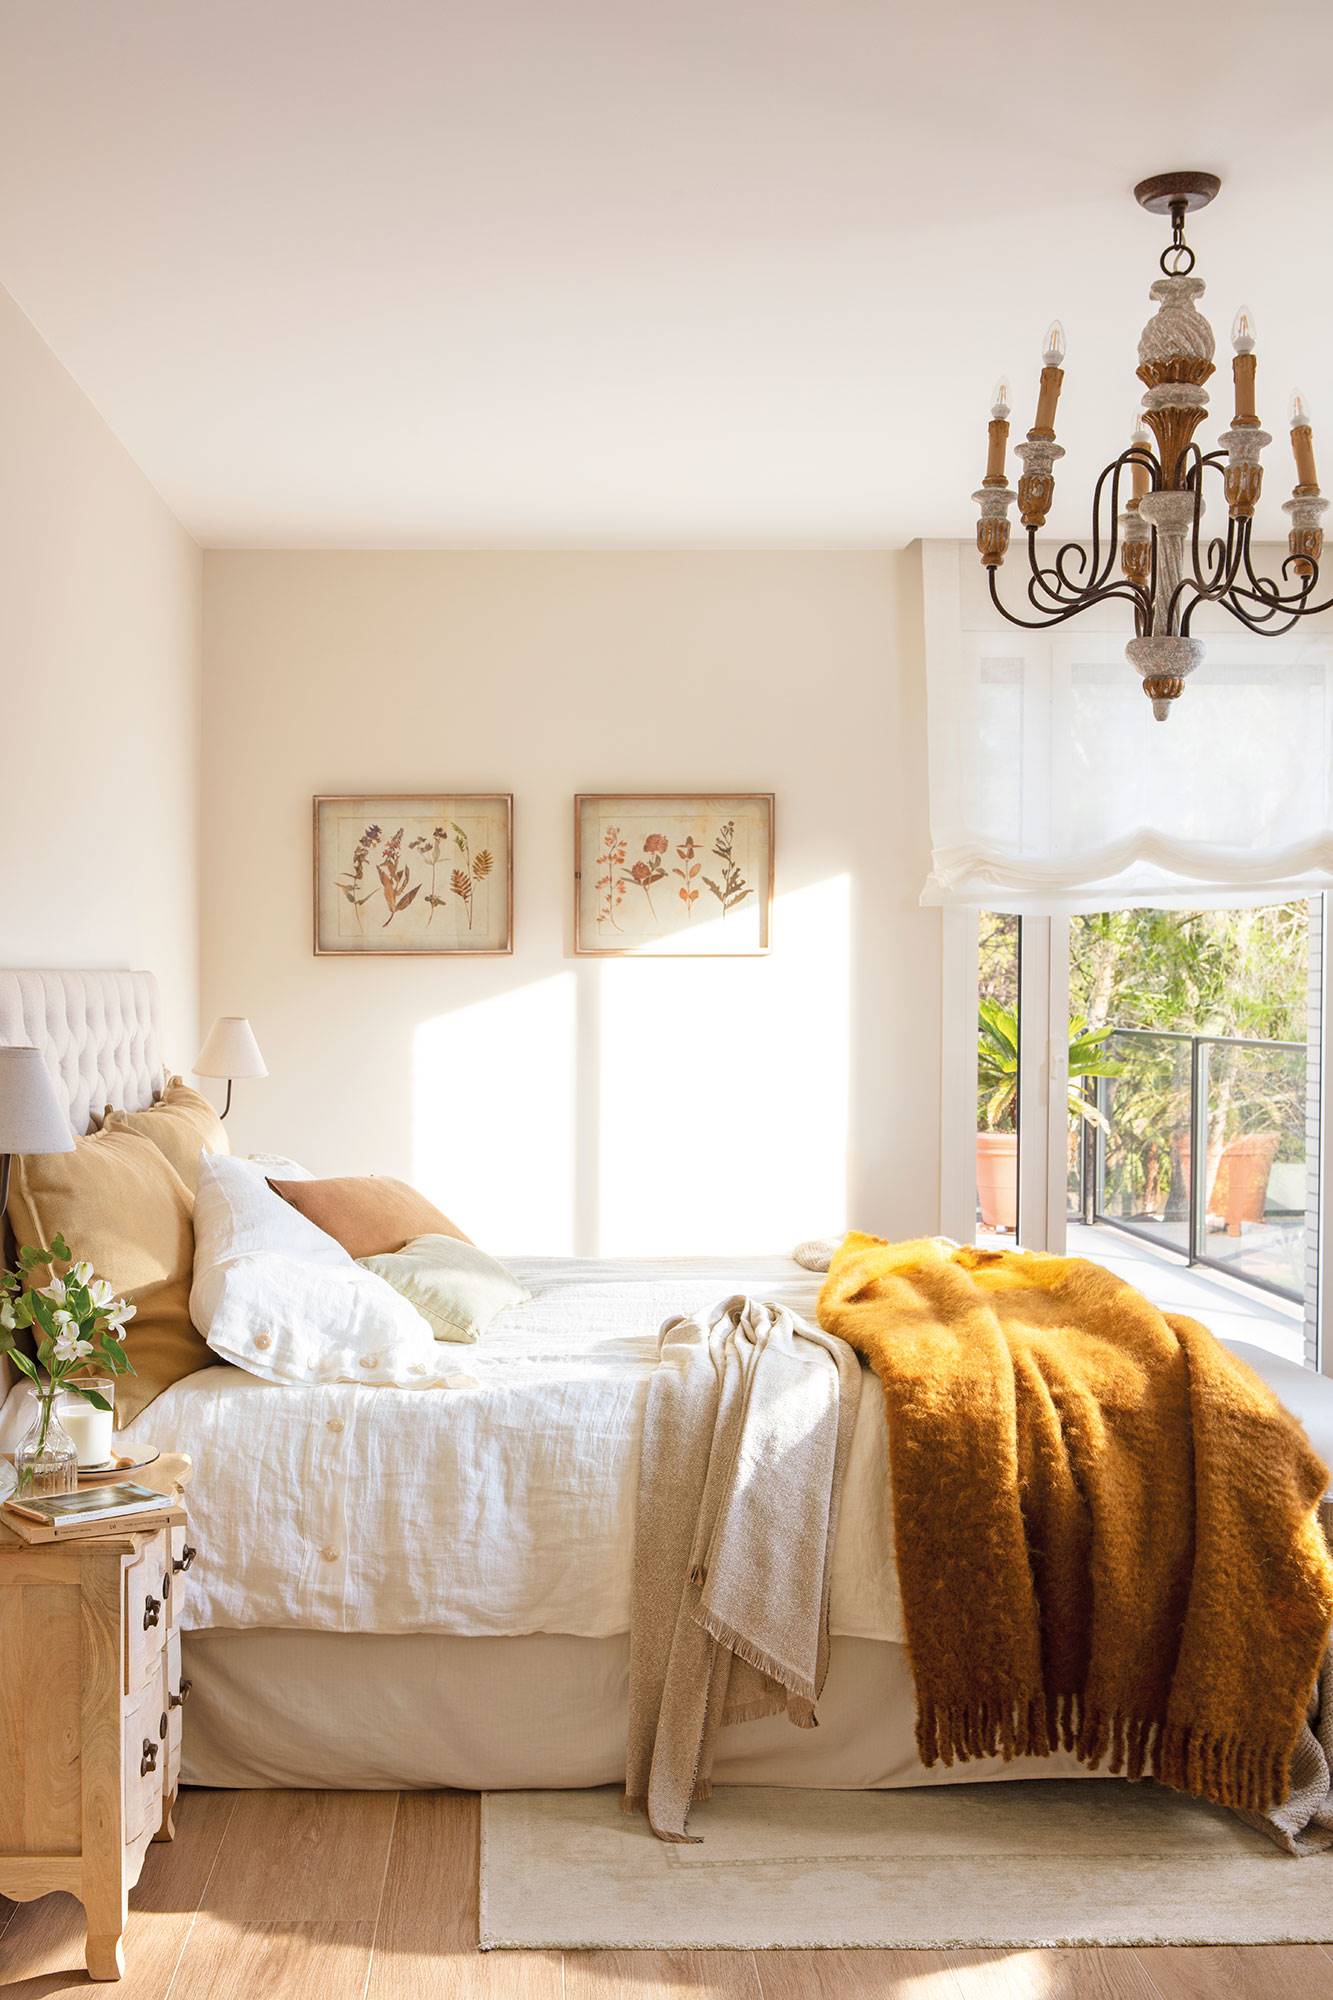 Dormitorio de estilo clásico decorado en color beige con cabecero capitoné 00533325